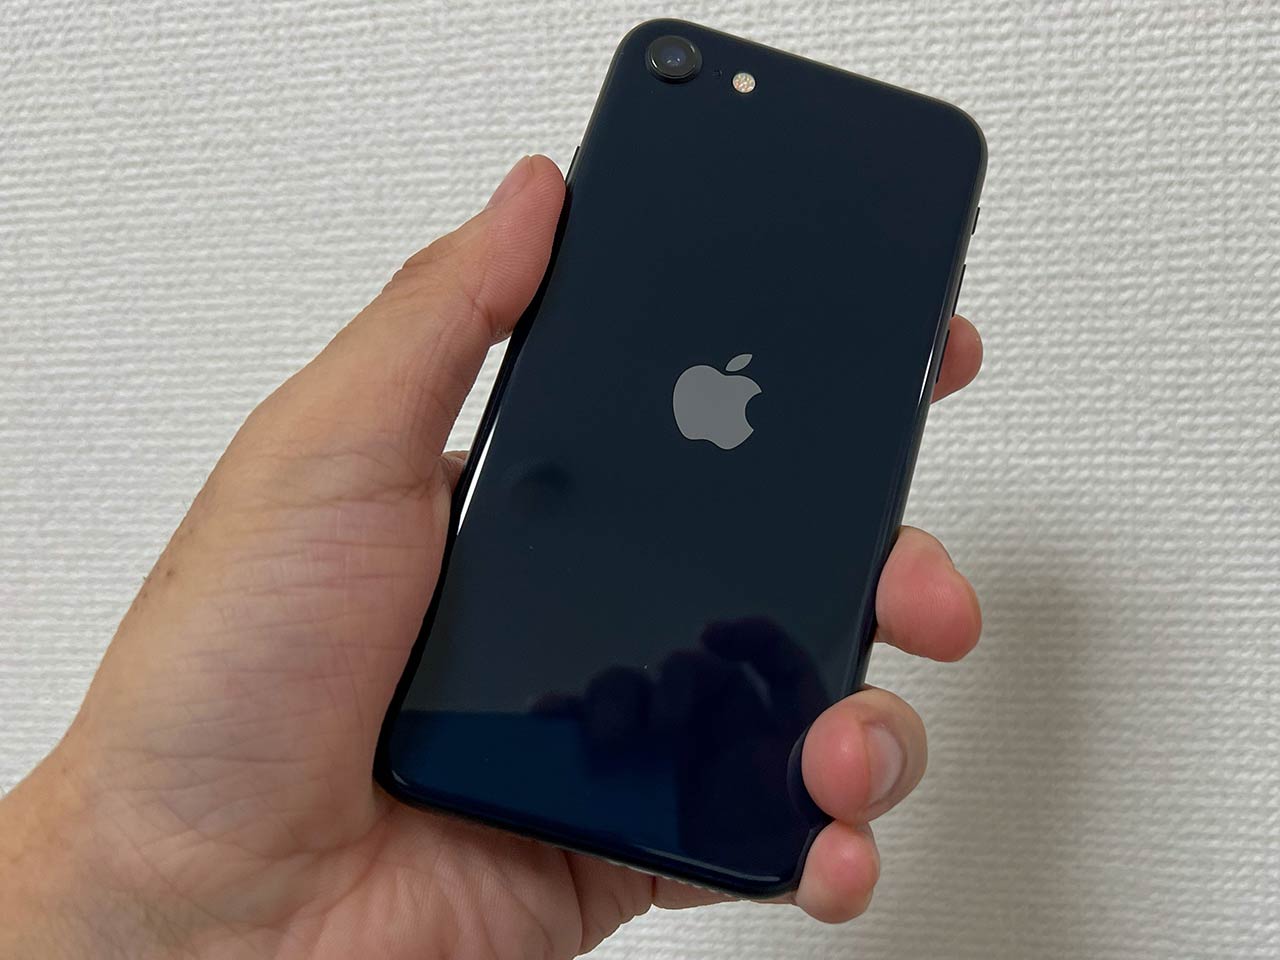 Apple iPhone SE 第3世代 128GB 黒色 ミッドナイト-